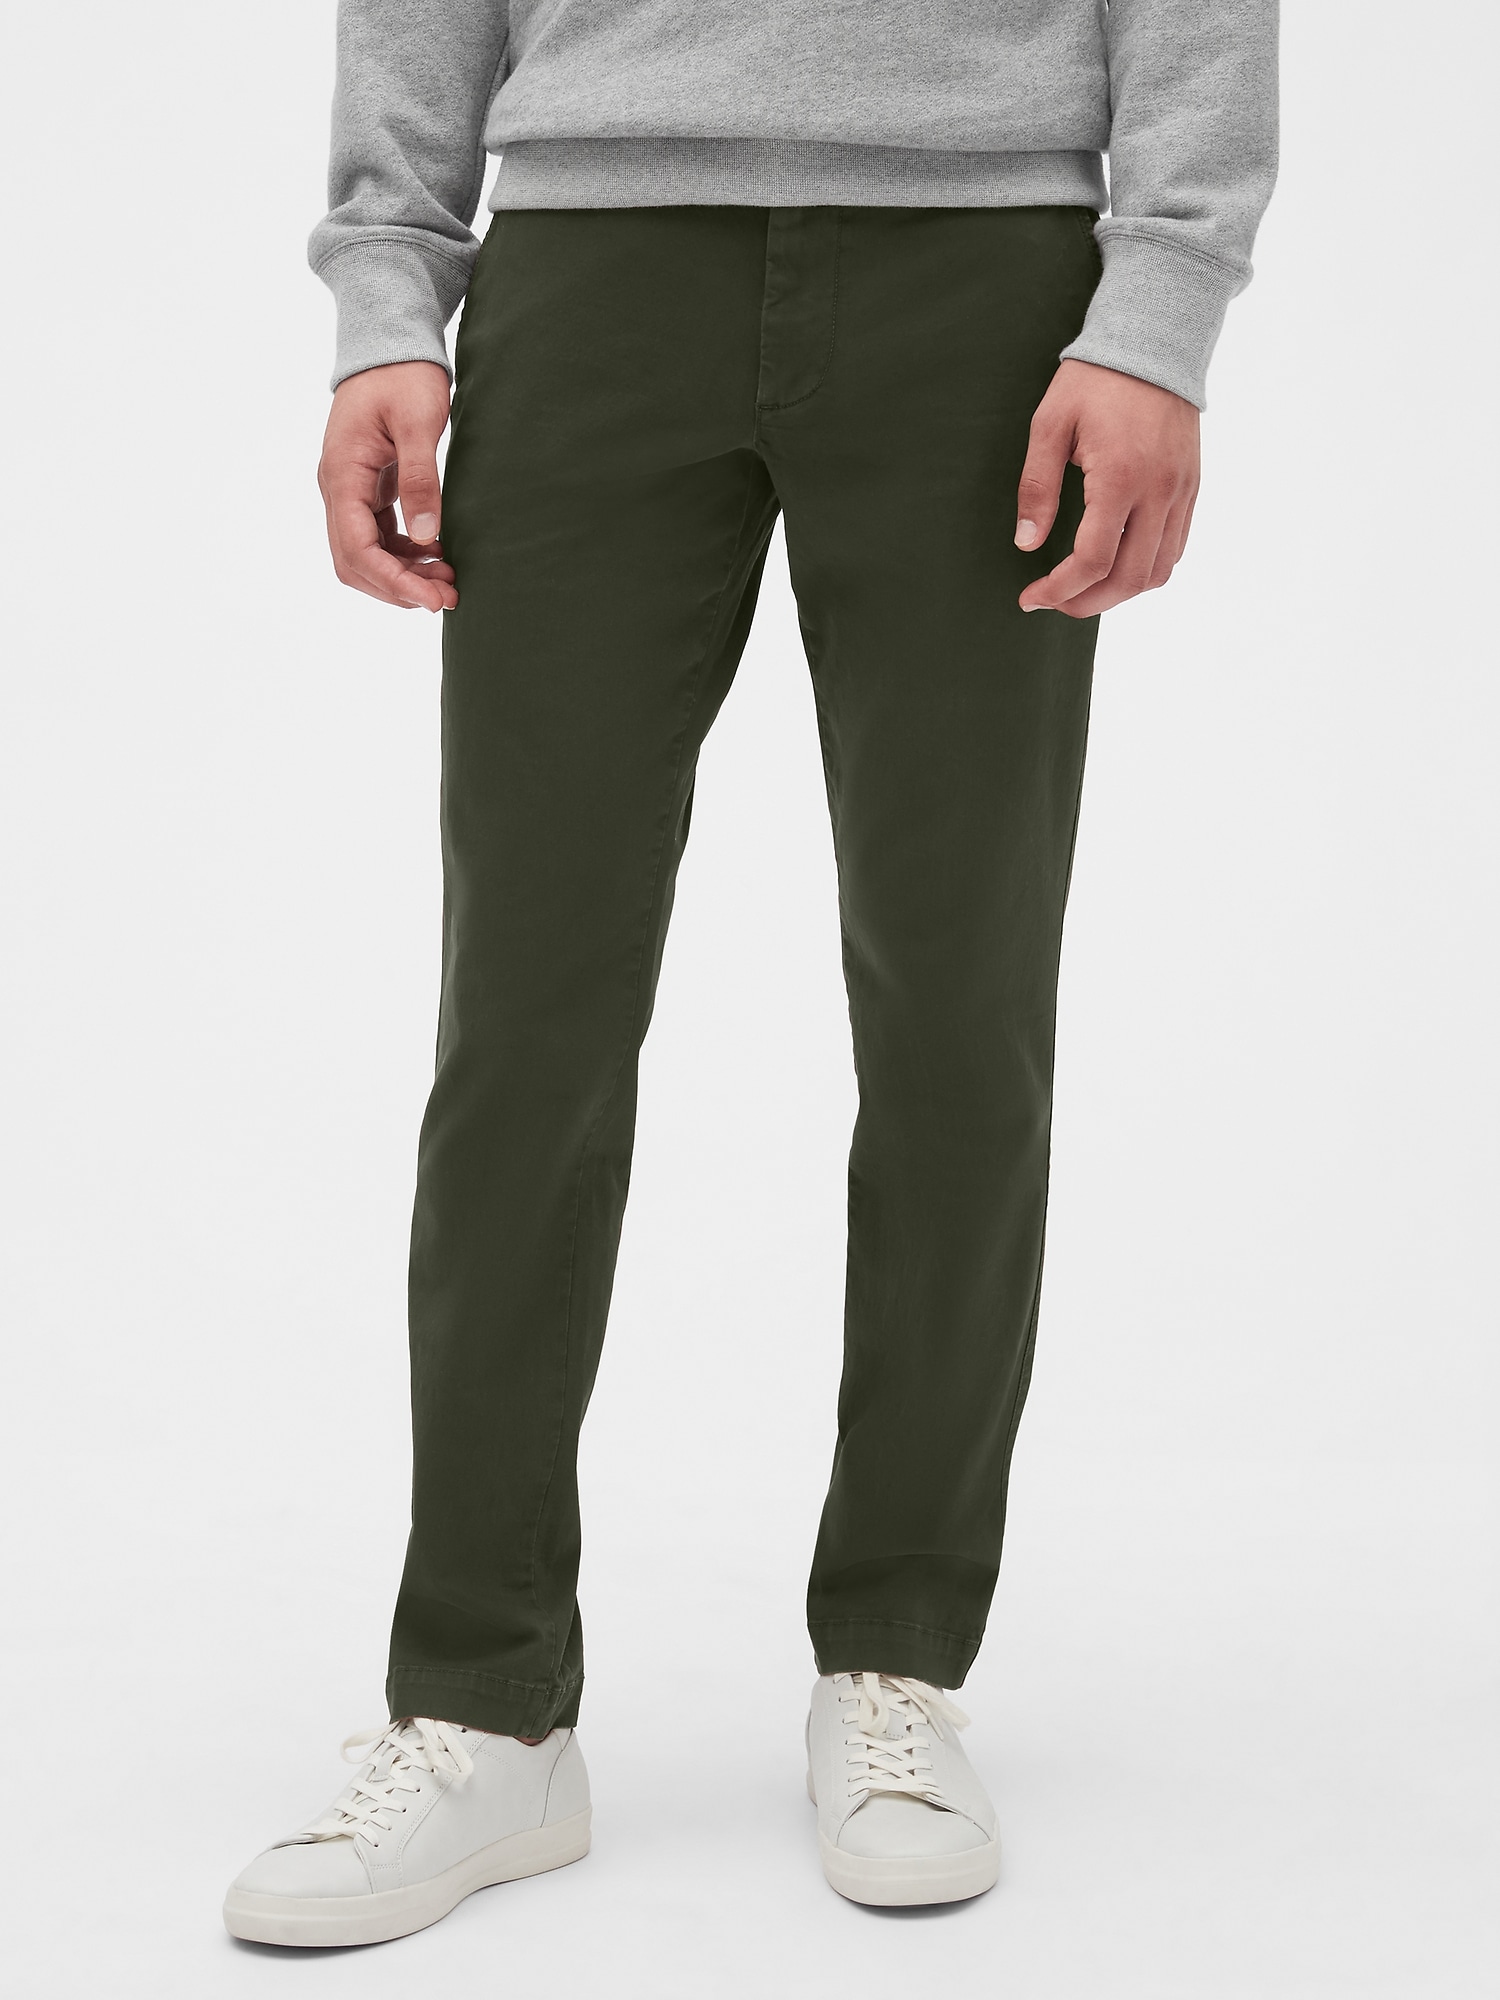 Vintage Khakis in Slim Fit with GapFlex | Gap